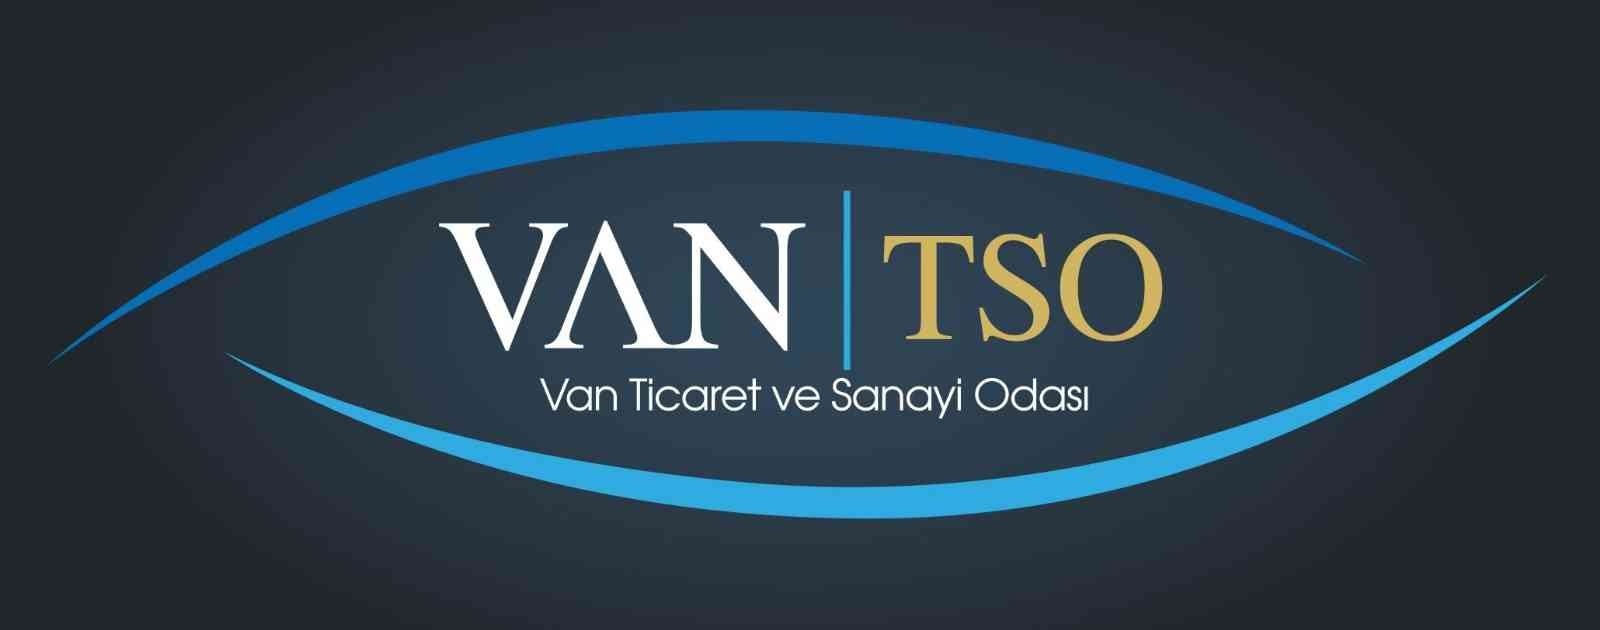 Van TSO’dan ‘uçak seferleri ve bilet fiyatı’ açıklaması